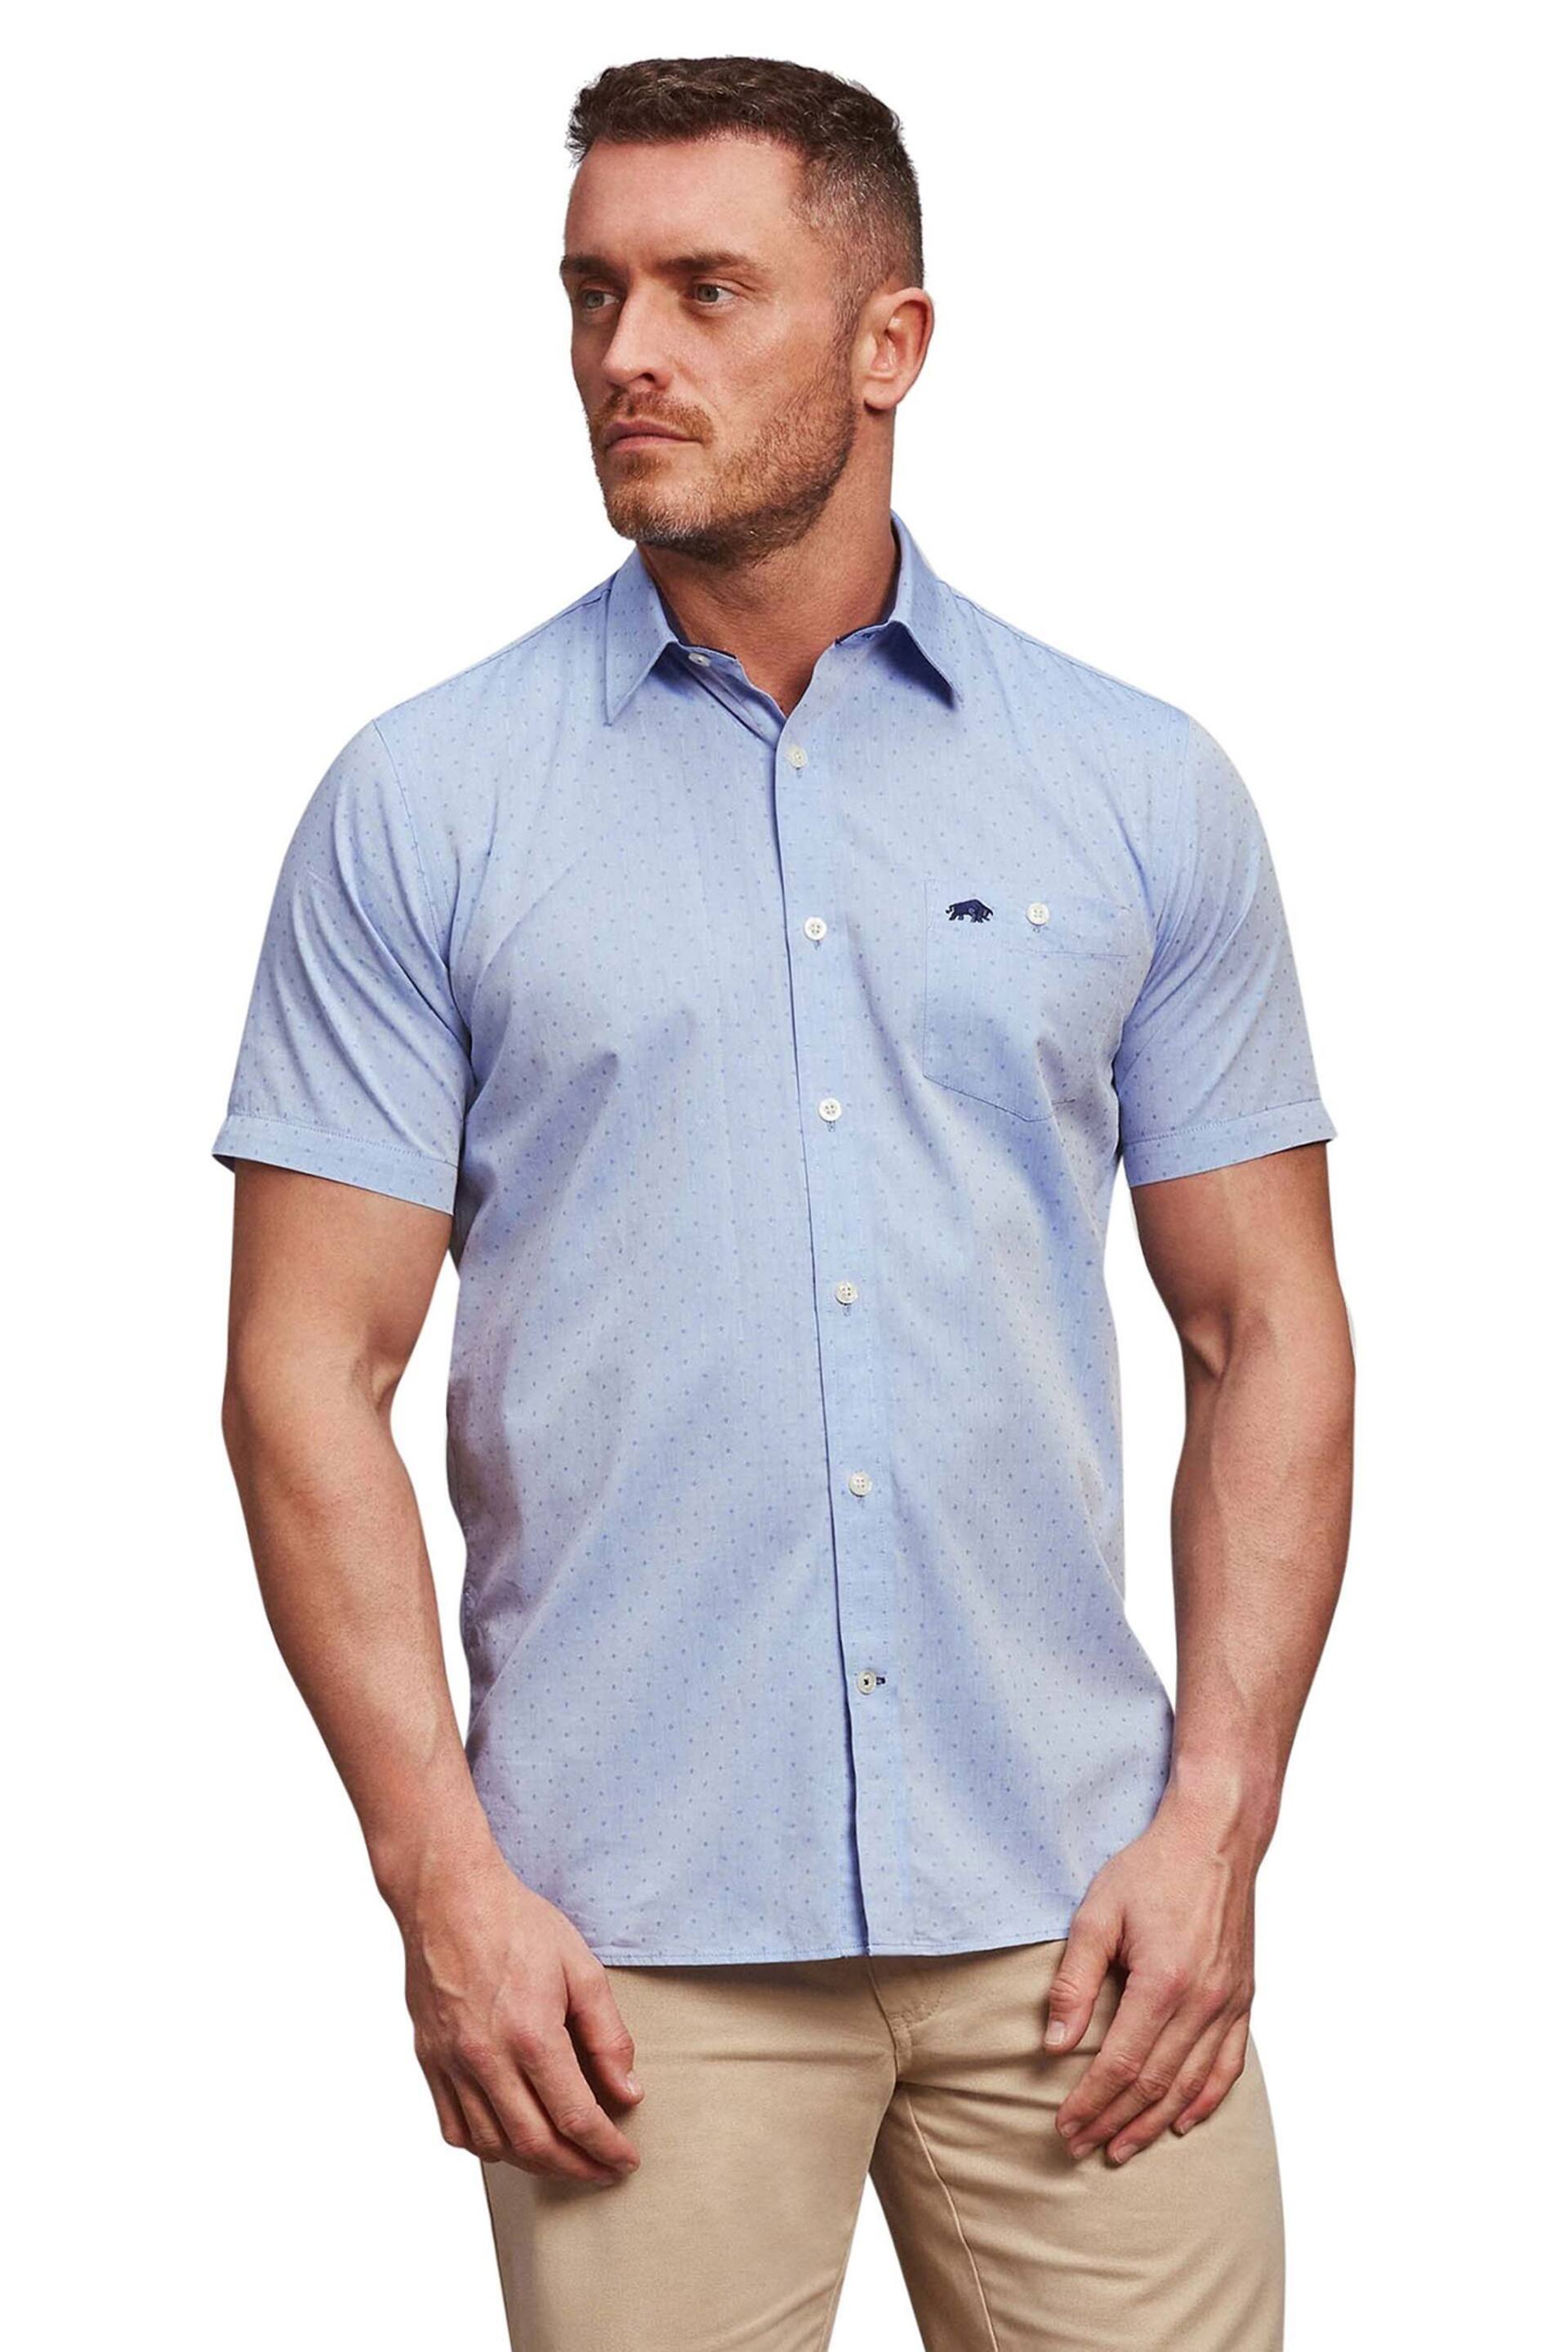 Raging Bull Blue Short Sleeve Dobby Shirt - Image 1 of 3